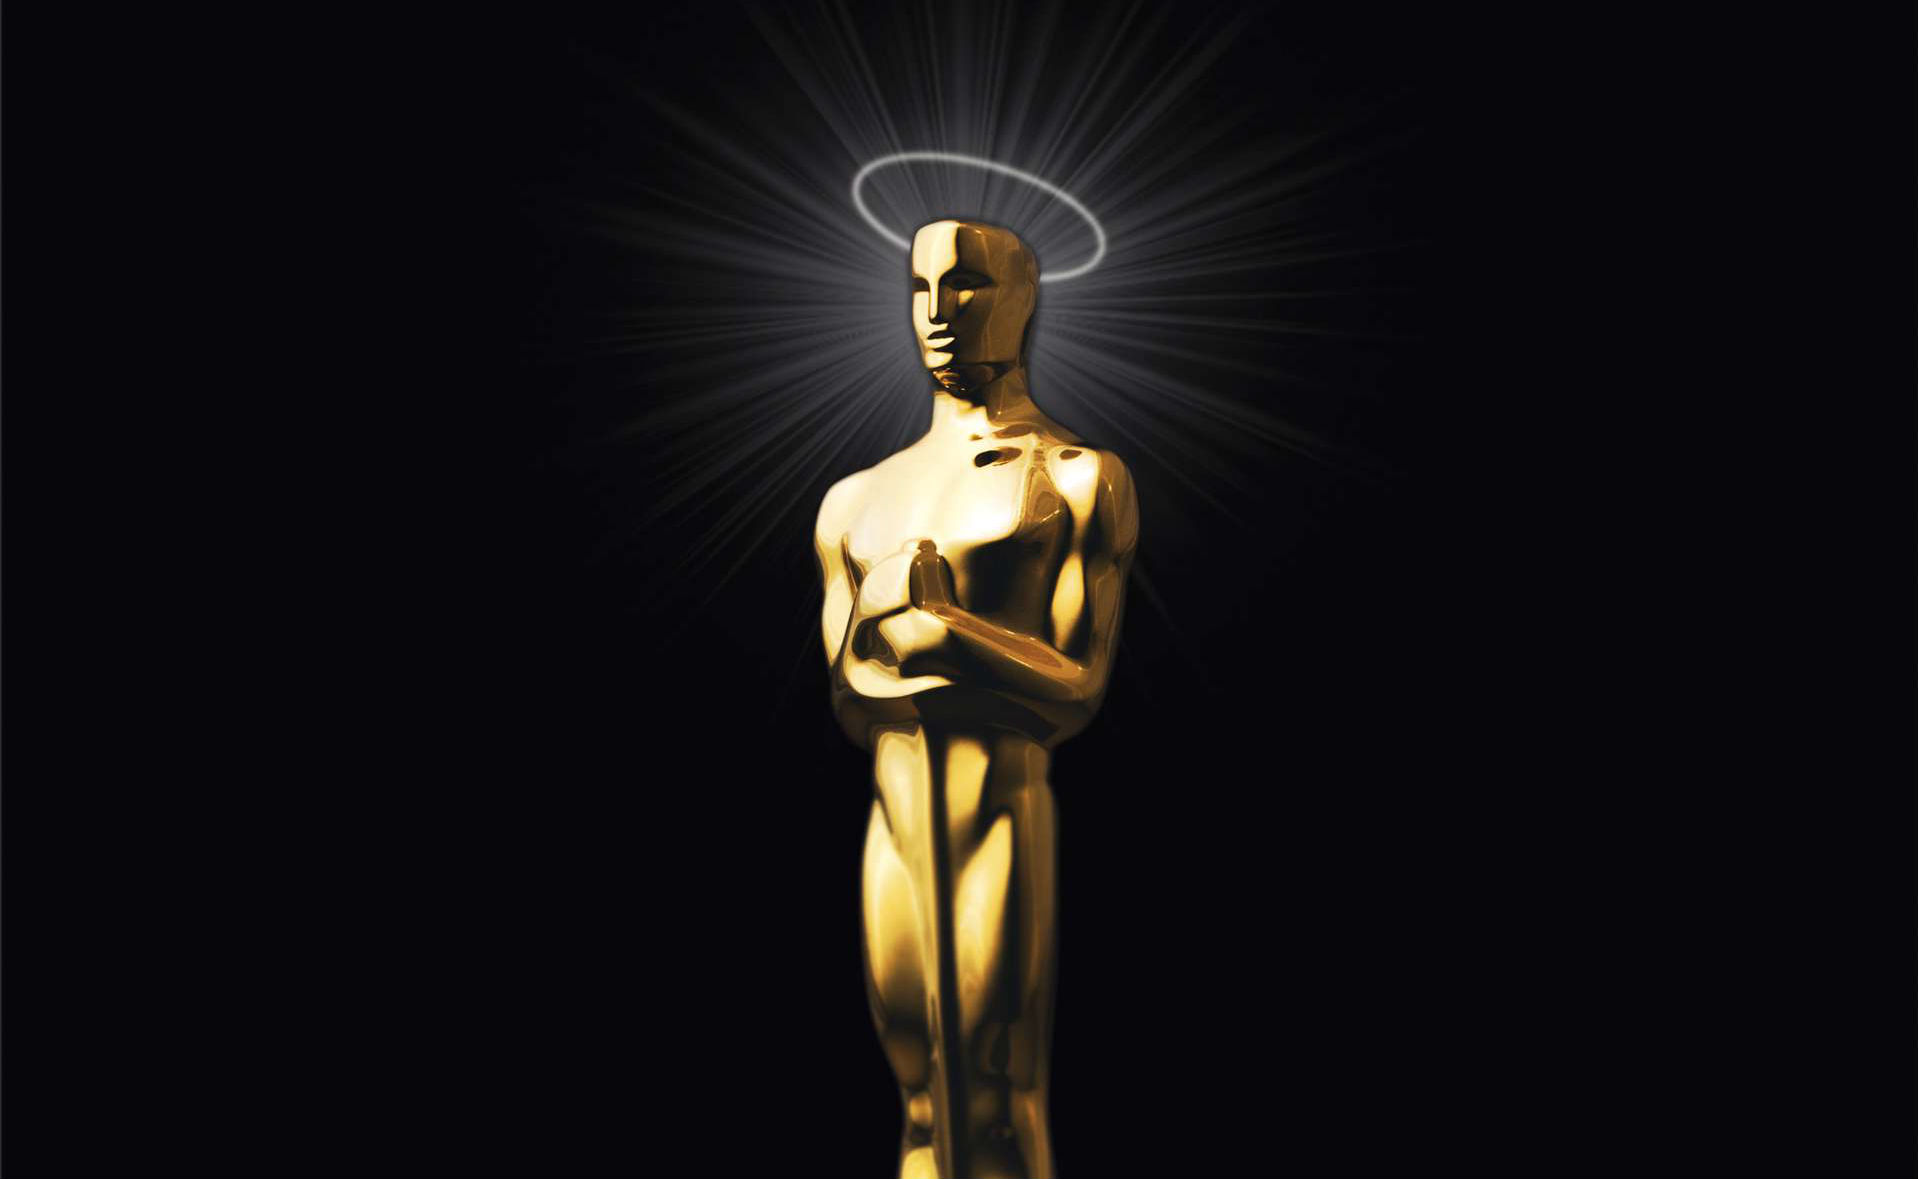 Is de Oscar een heiligverklaring (Catharijneconvent)